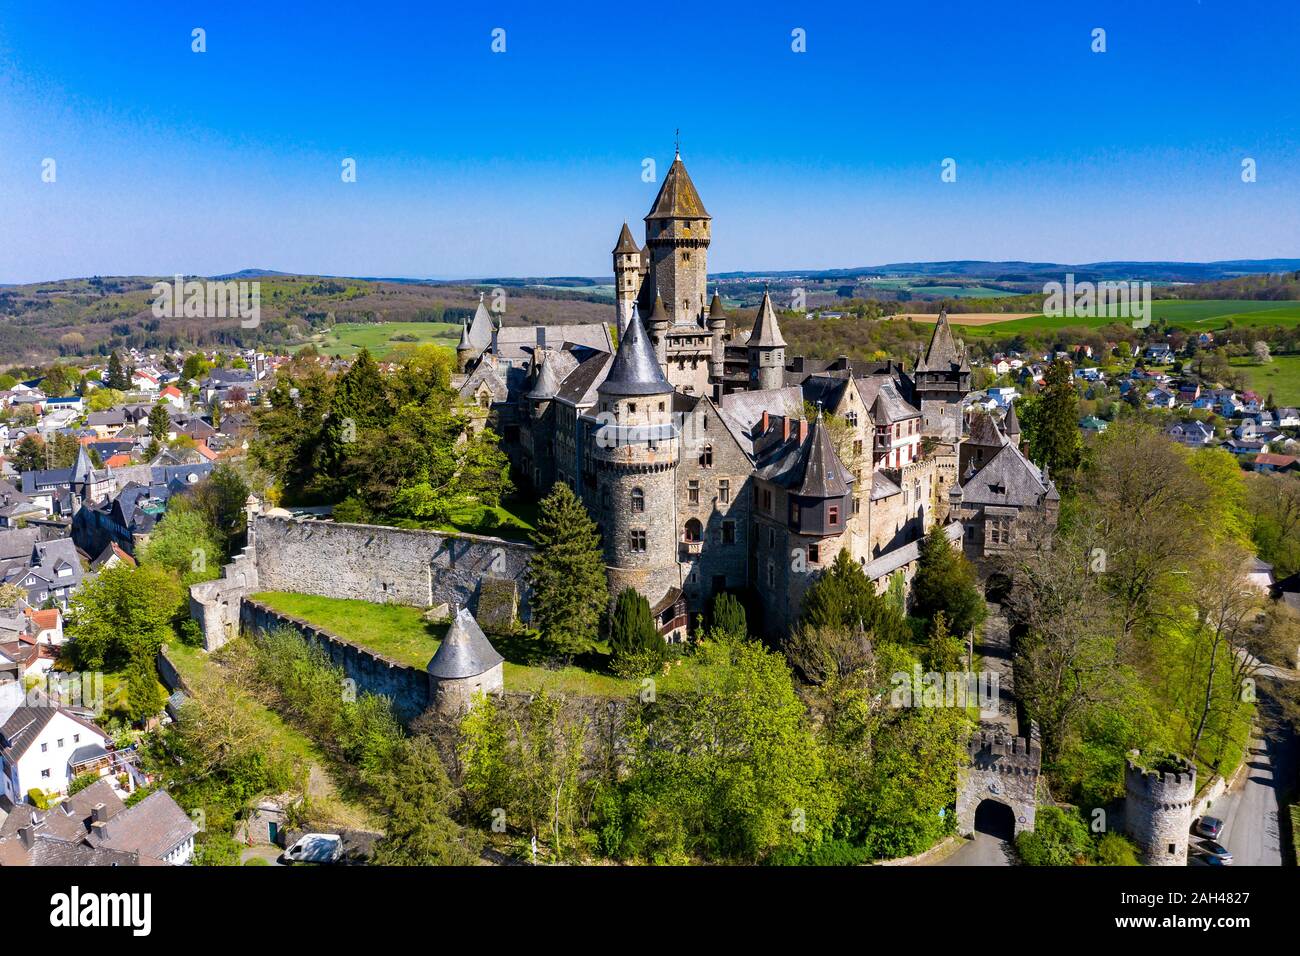 Alemania, Hesse, Braunfels, vista aérea del Schloss Braunfels Foto de stock